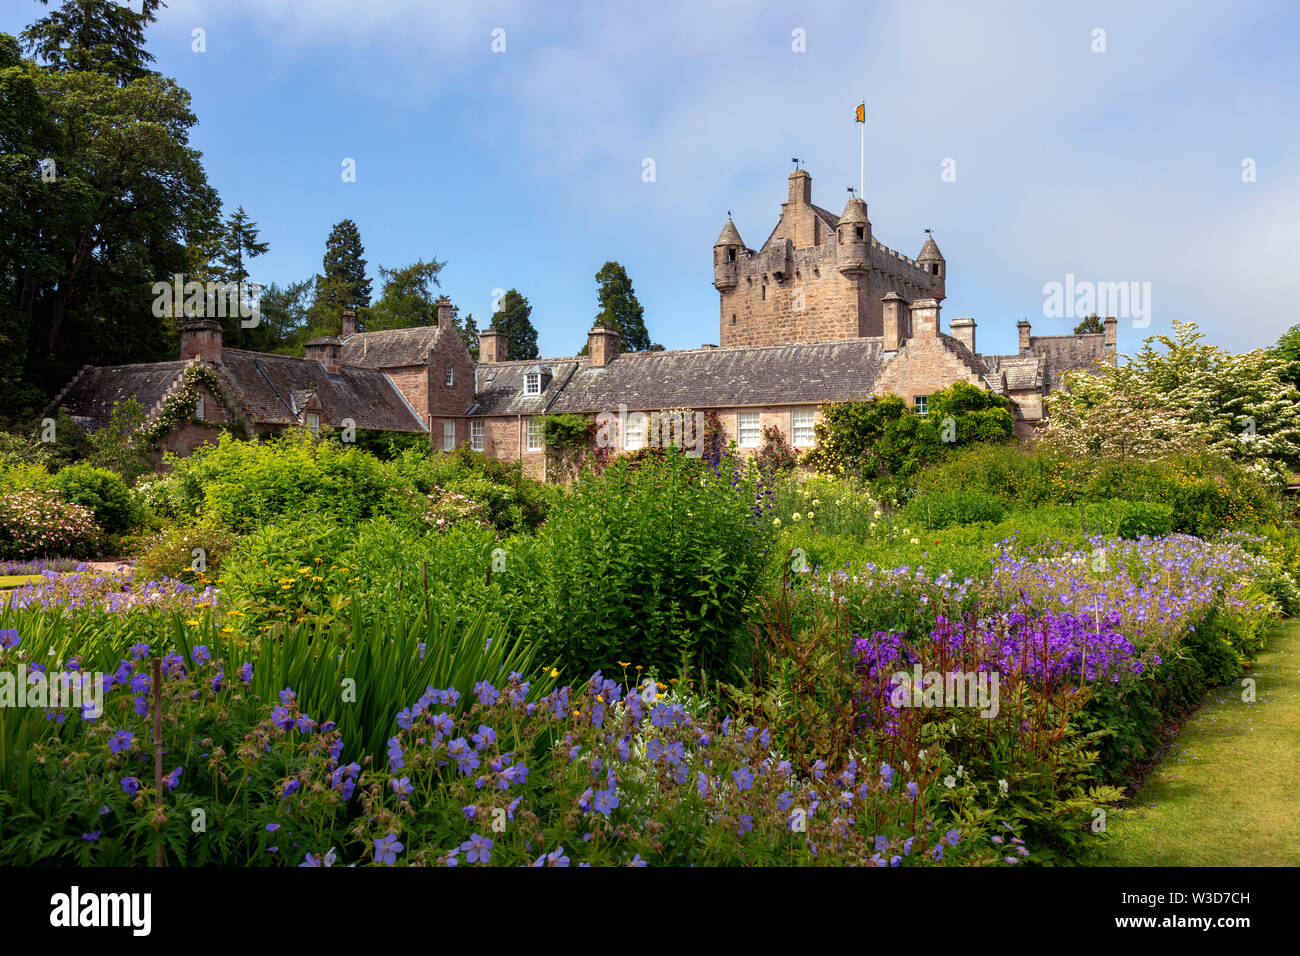 Cawdor Castle and its gardens, Cawdor, northeast of Inverness, Scotland, UK Stock Photo